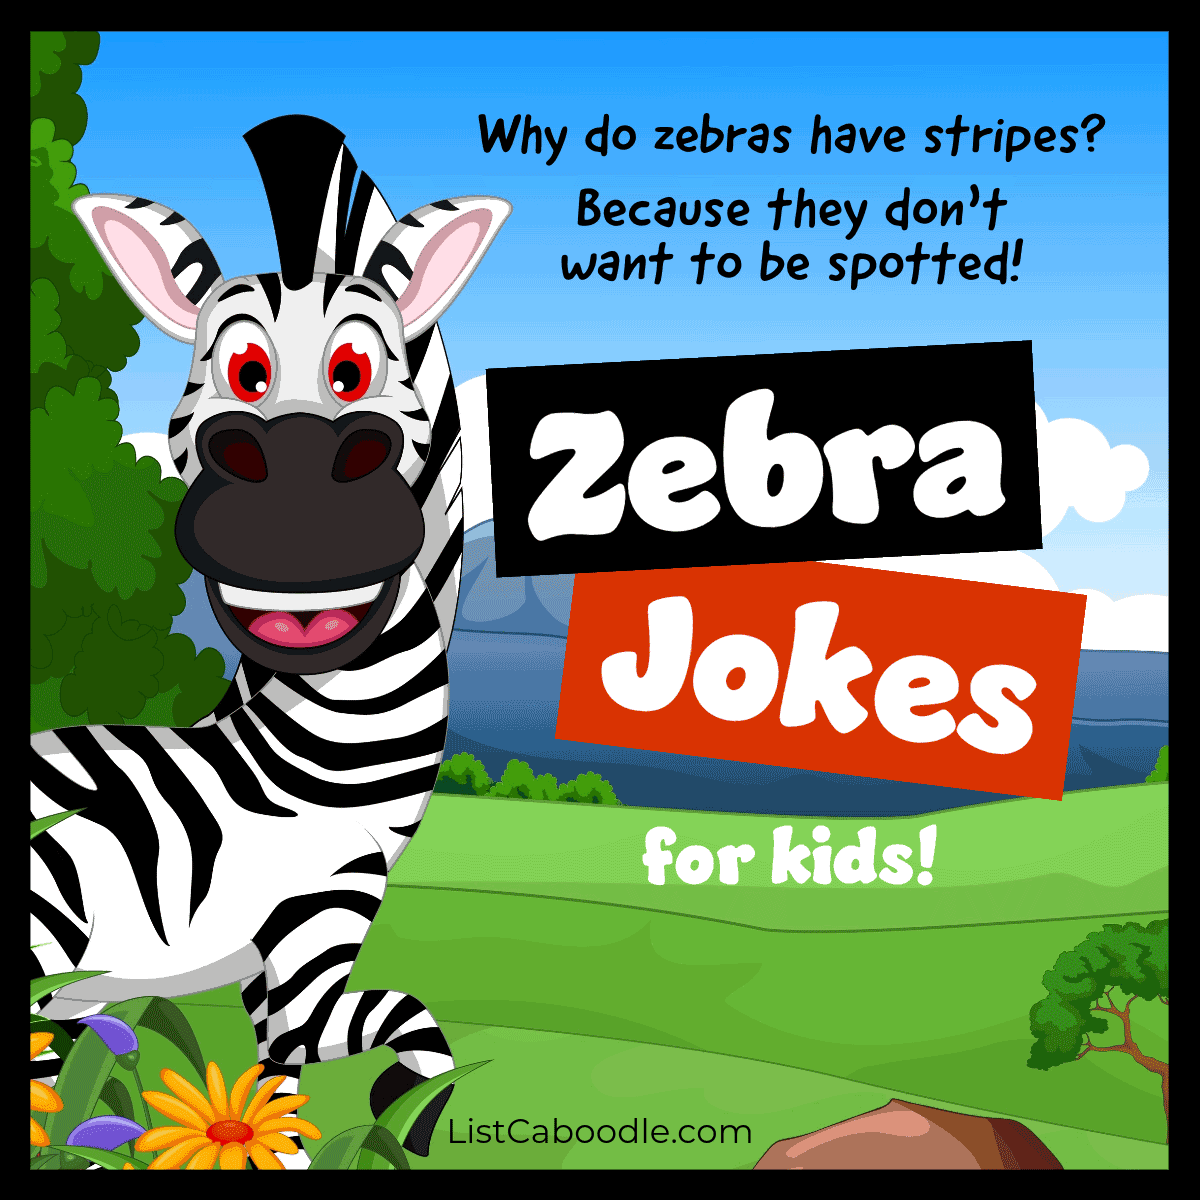 zebra jokes for kids